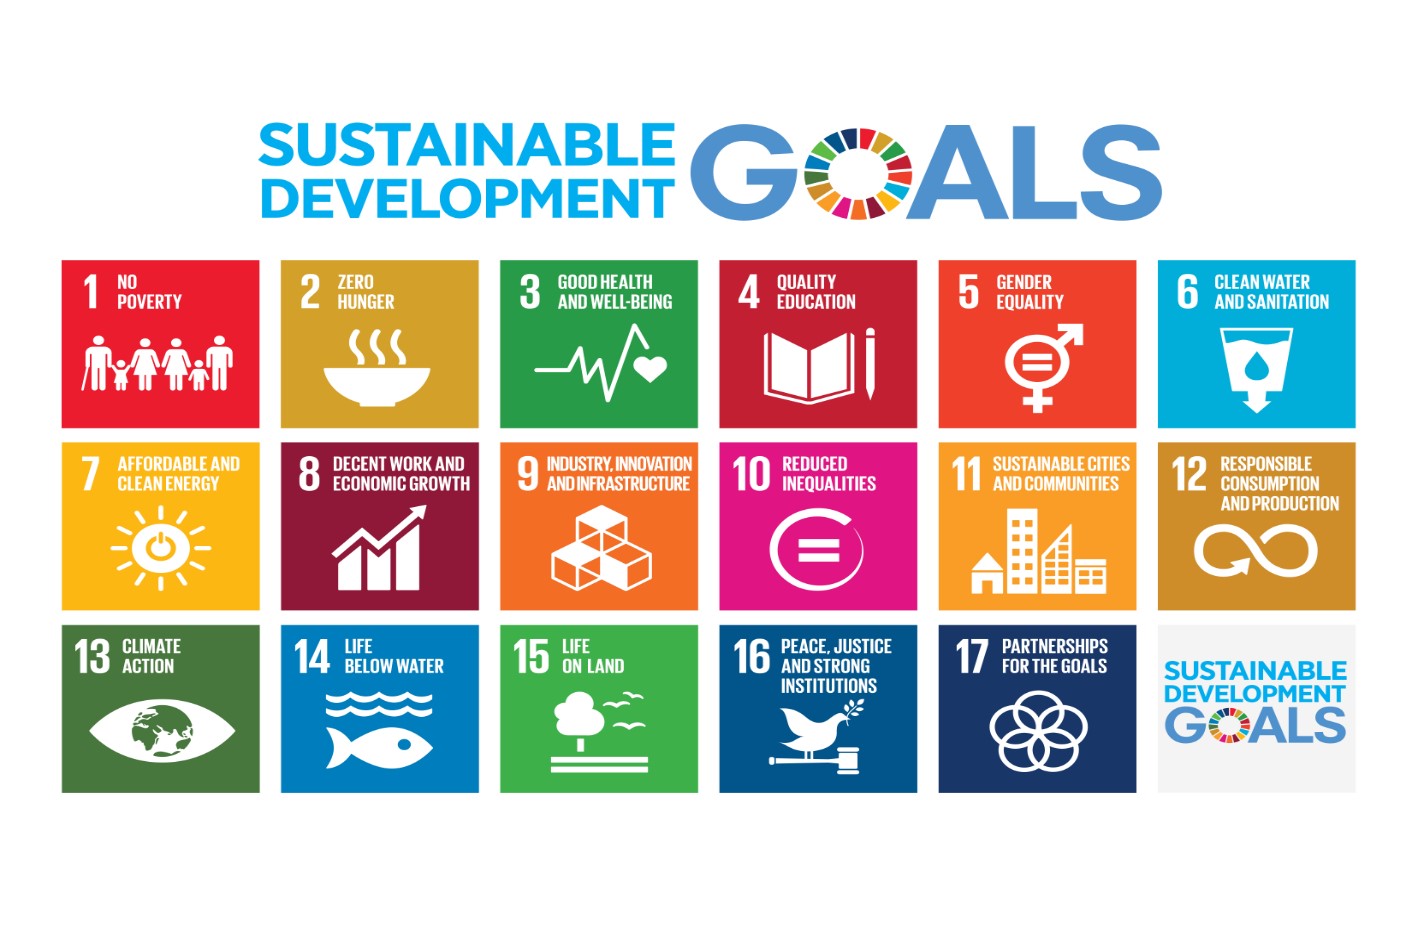 sustainable goals image